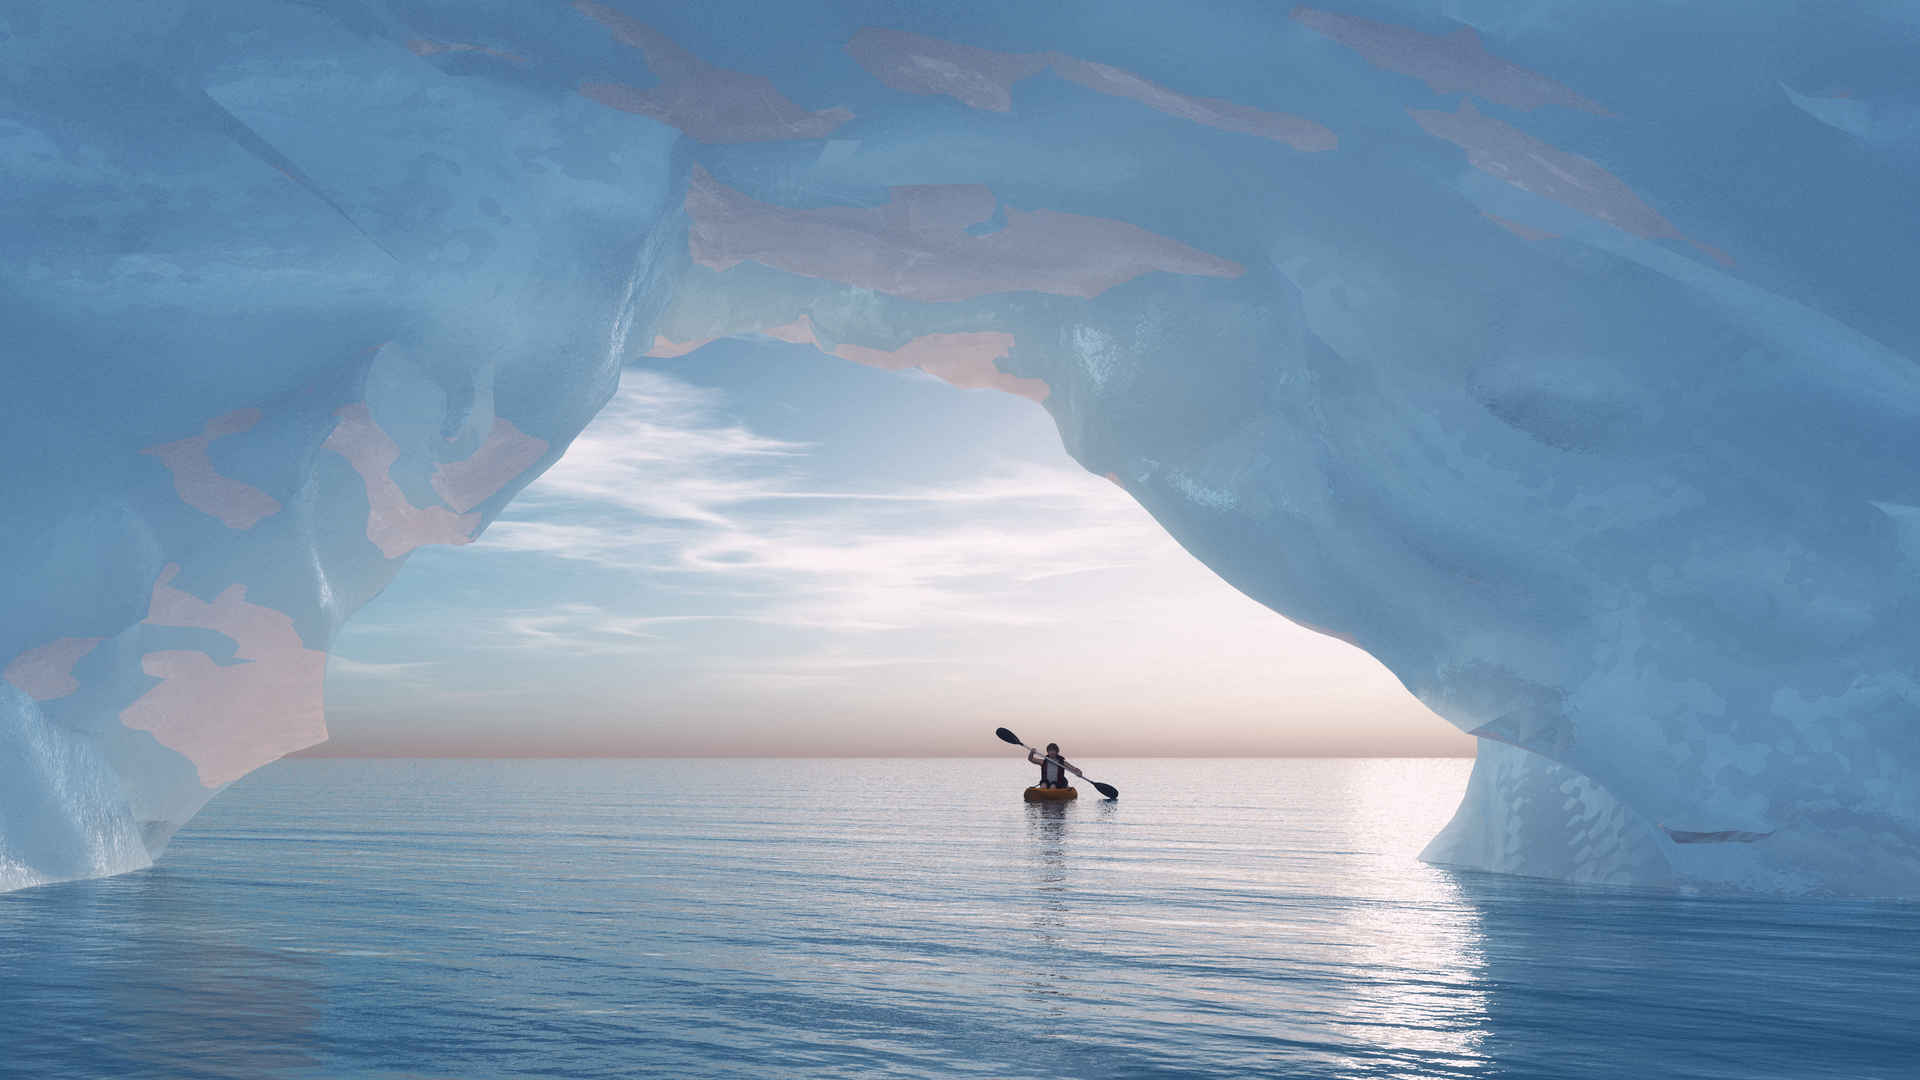 冰河一艘船孤独壁纸-